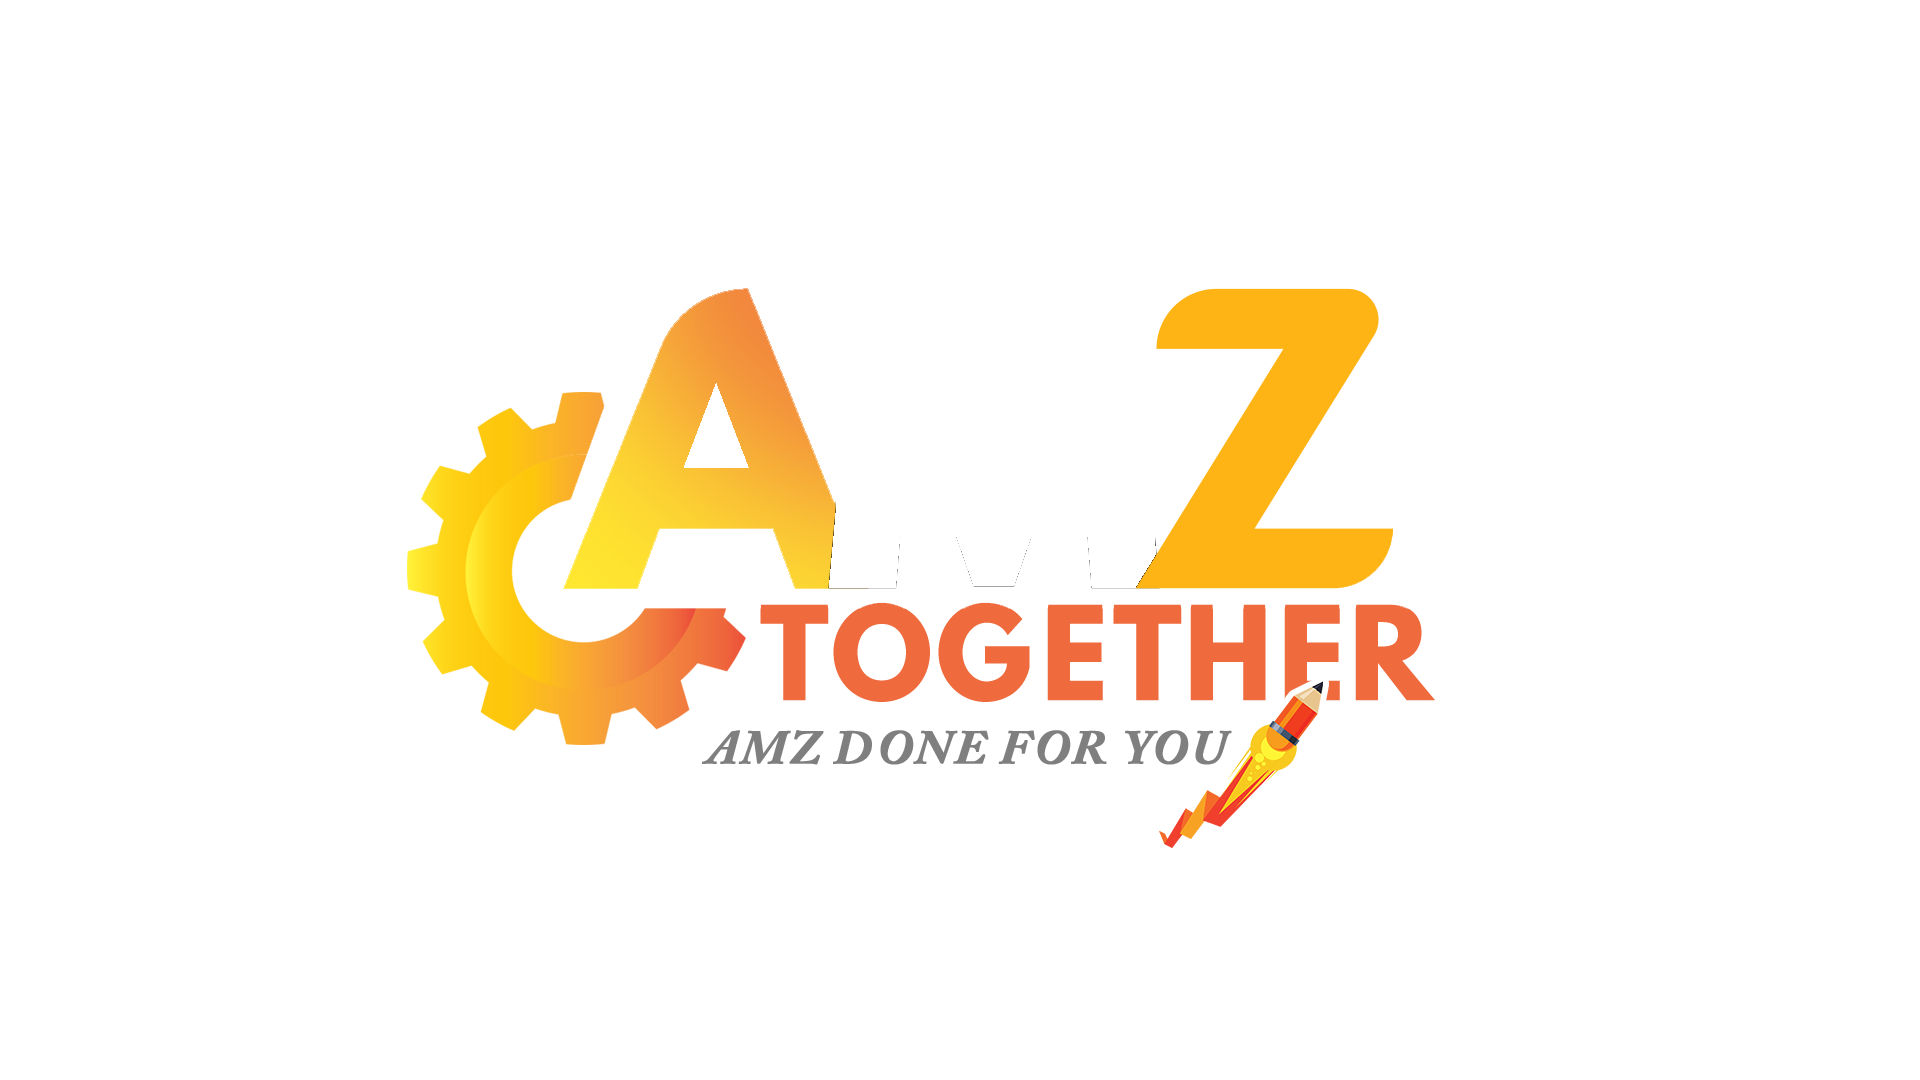 amz together amazon automation